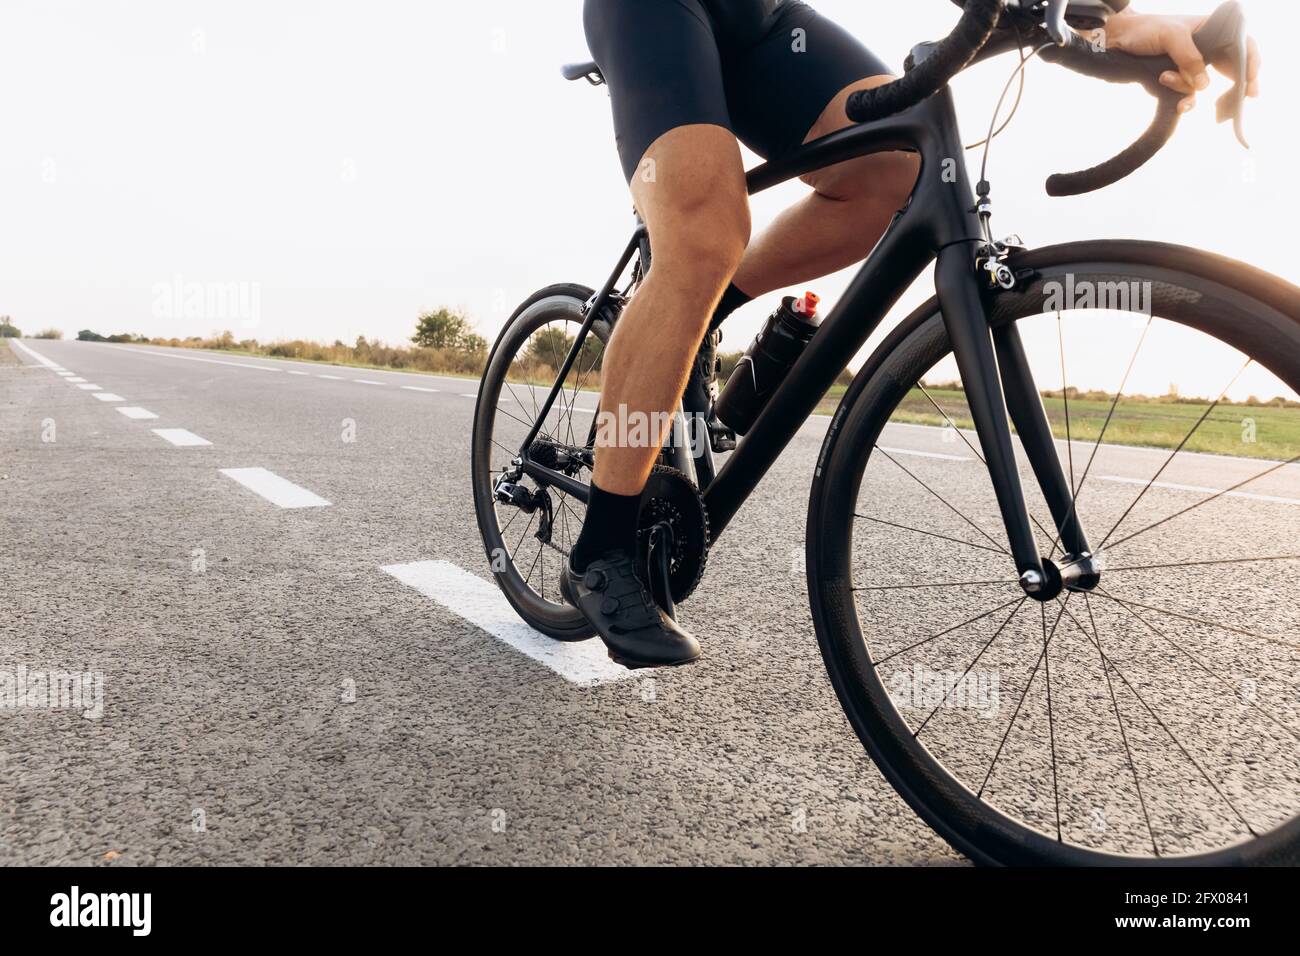 Professioneller Radfahrer, der Fahrrad auf asphaltierter Straße fährt Stockfoto